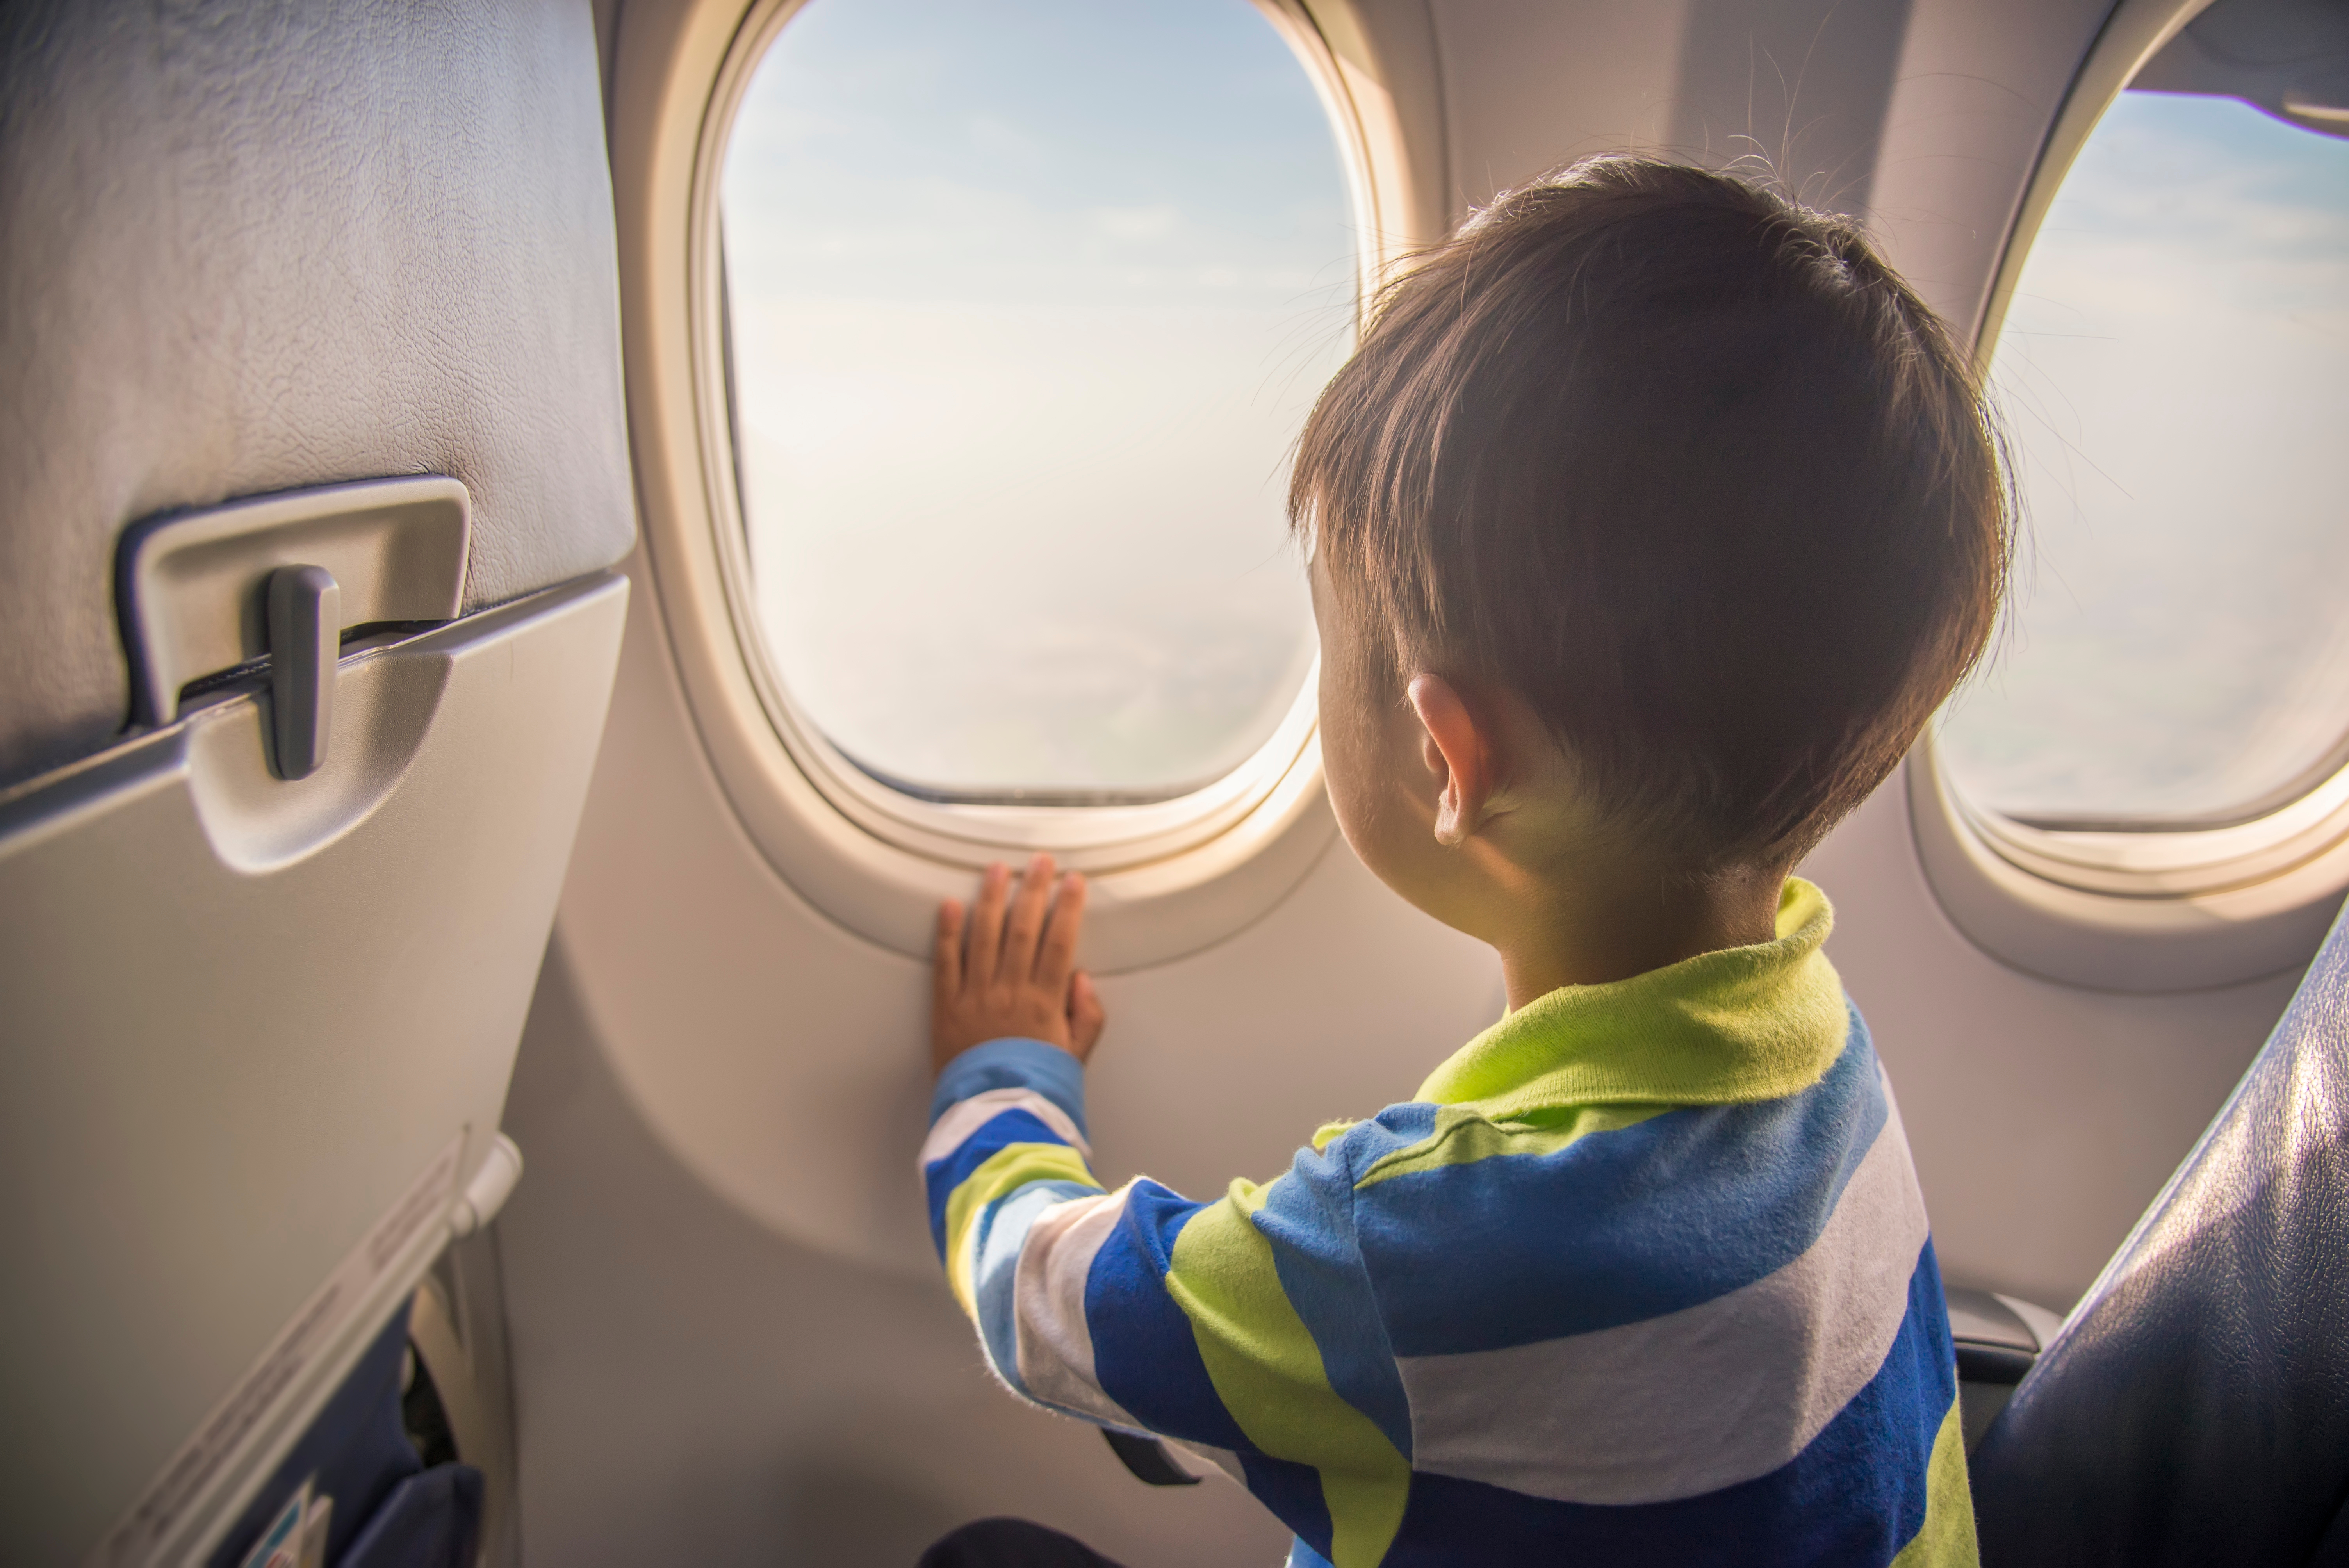 Ein Kind in einem Flugzeug | Quelle: Shutterstock